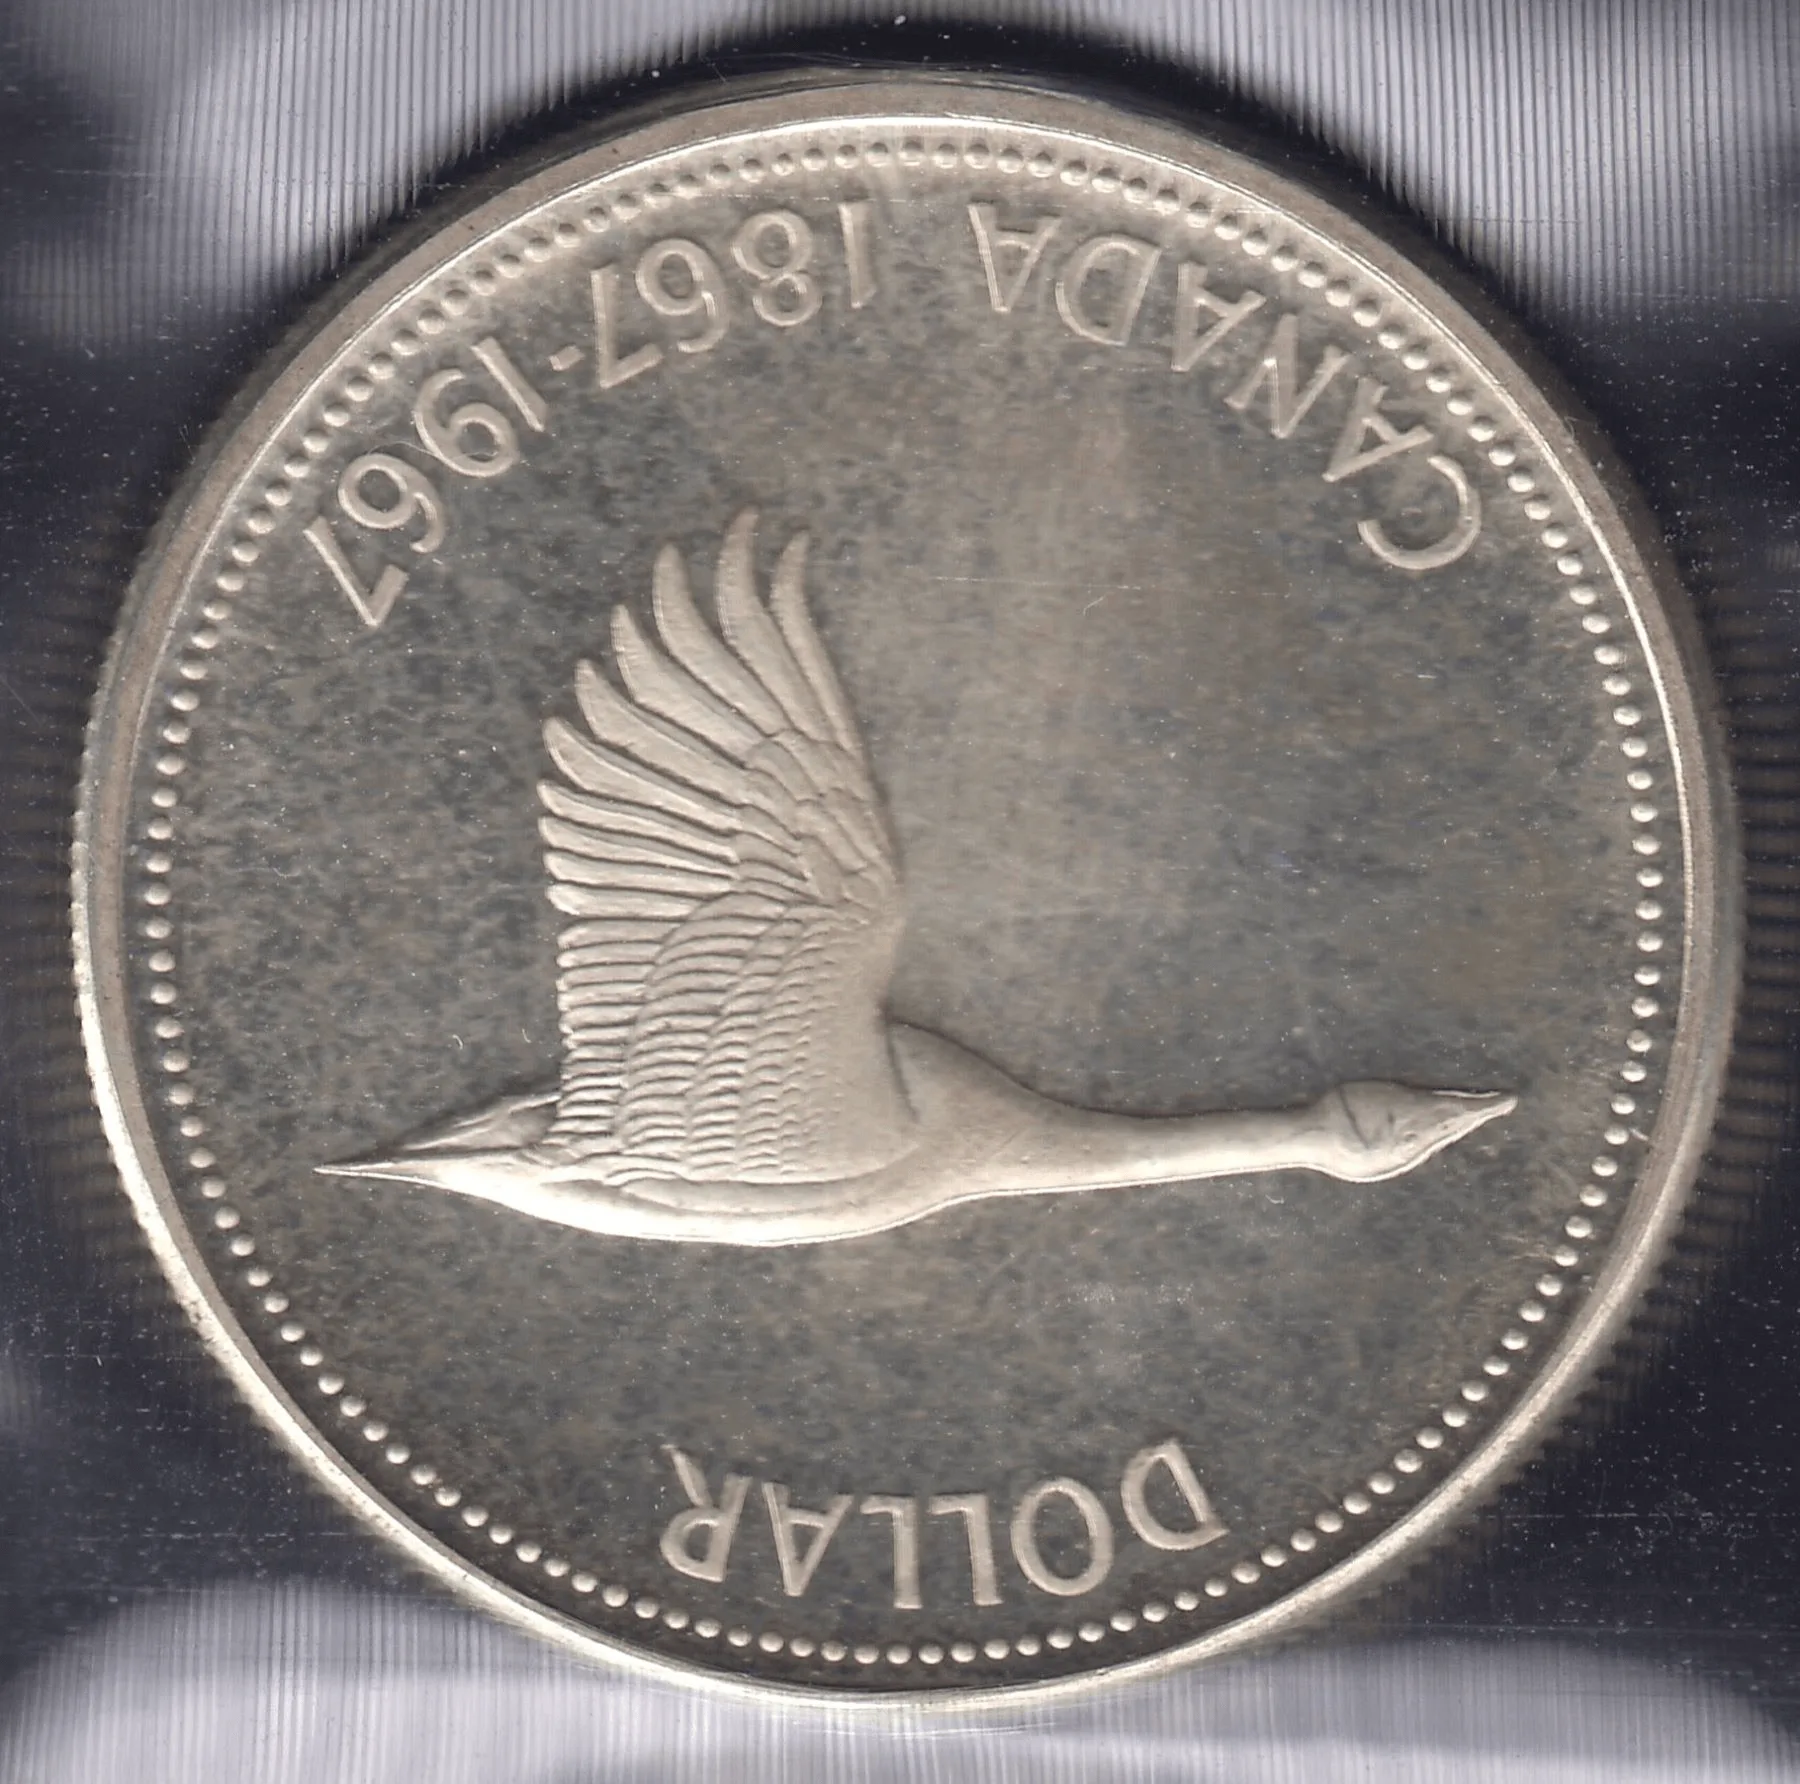 expensive 1967 Canada goose dollar upset dies